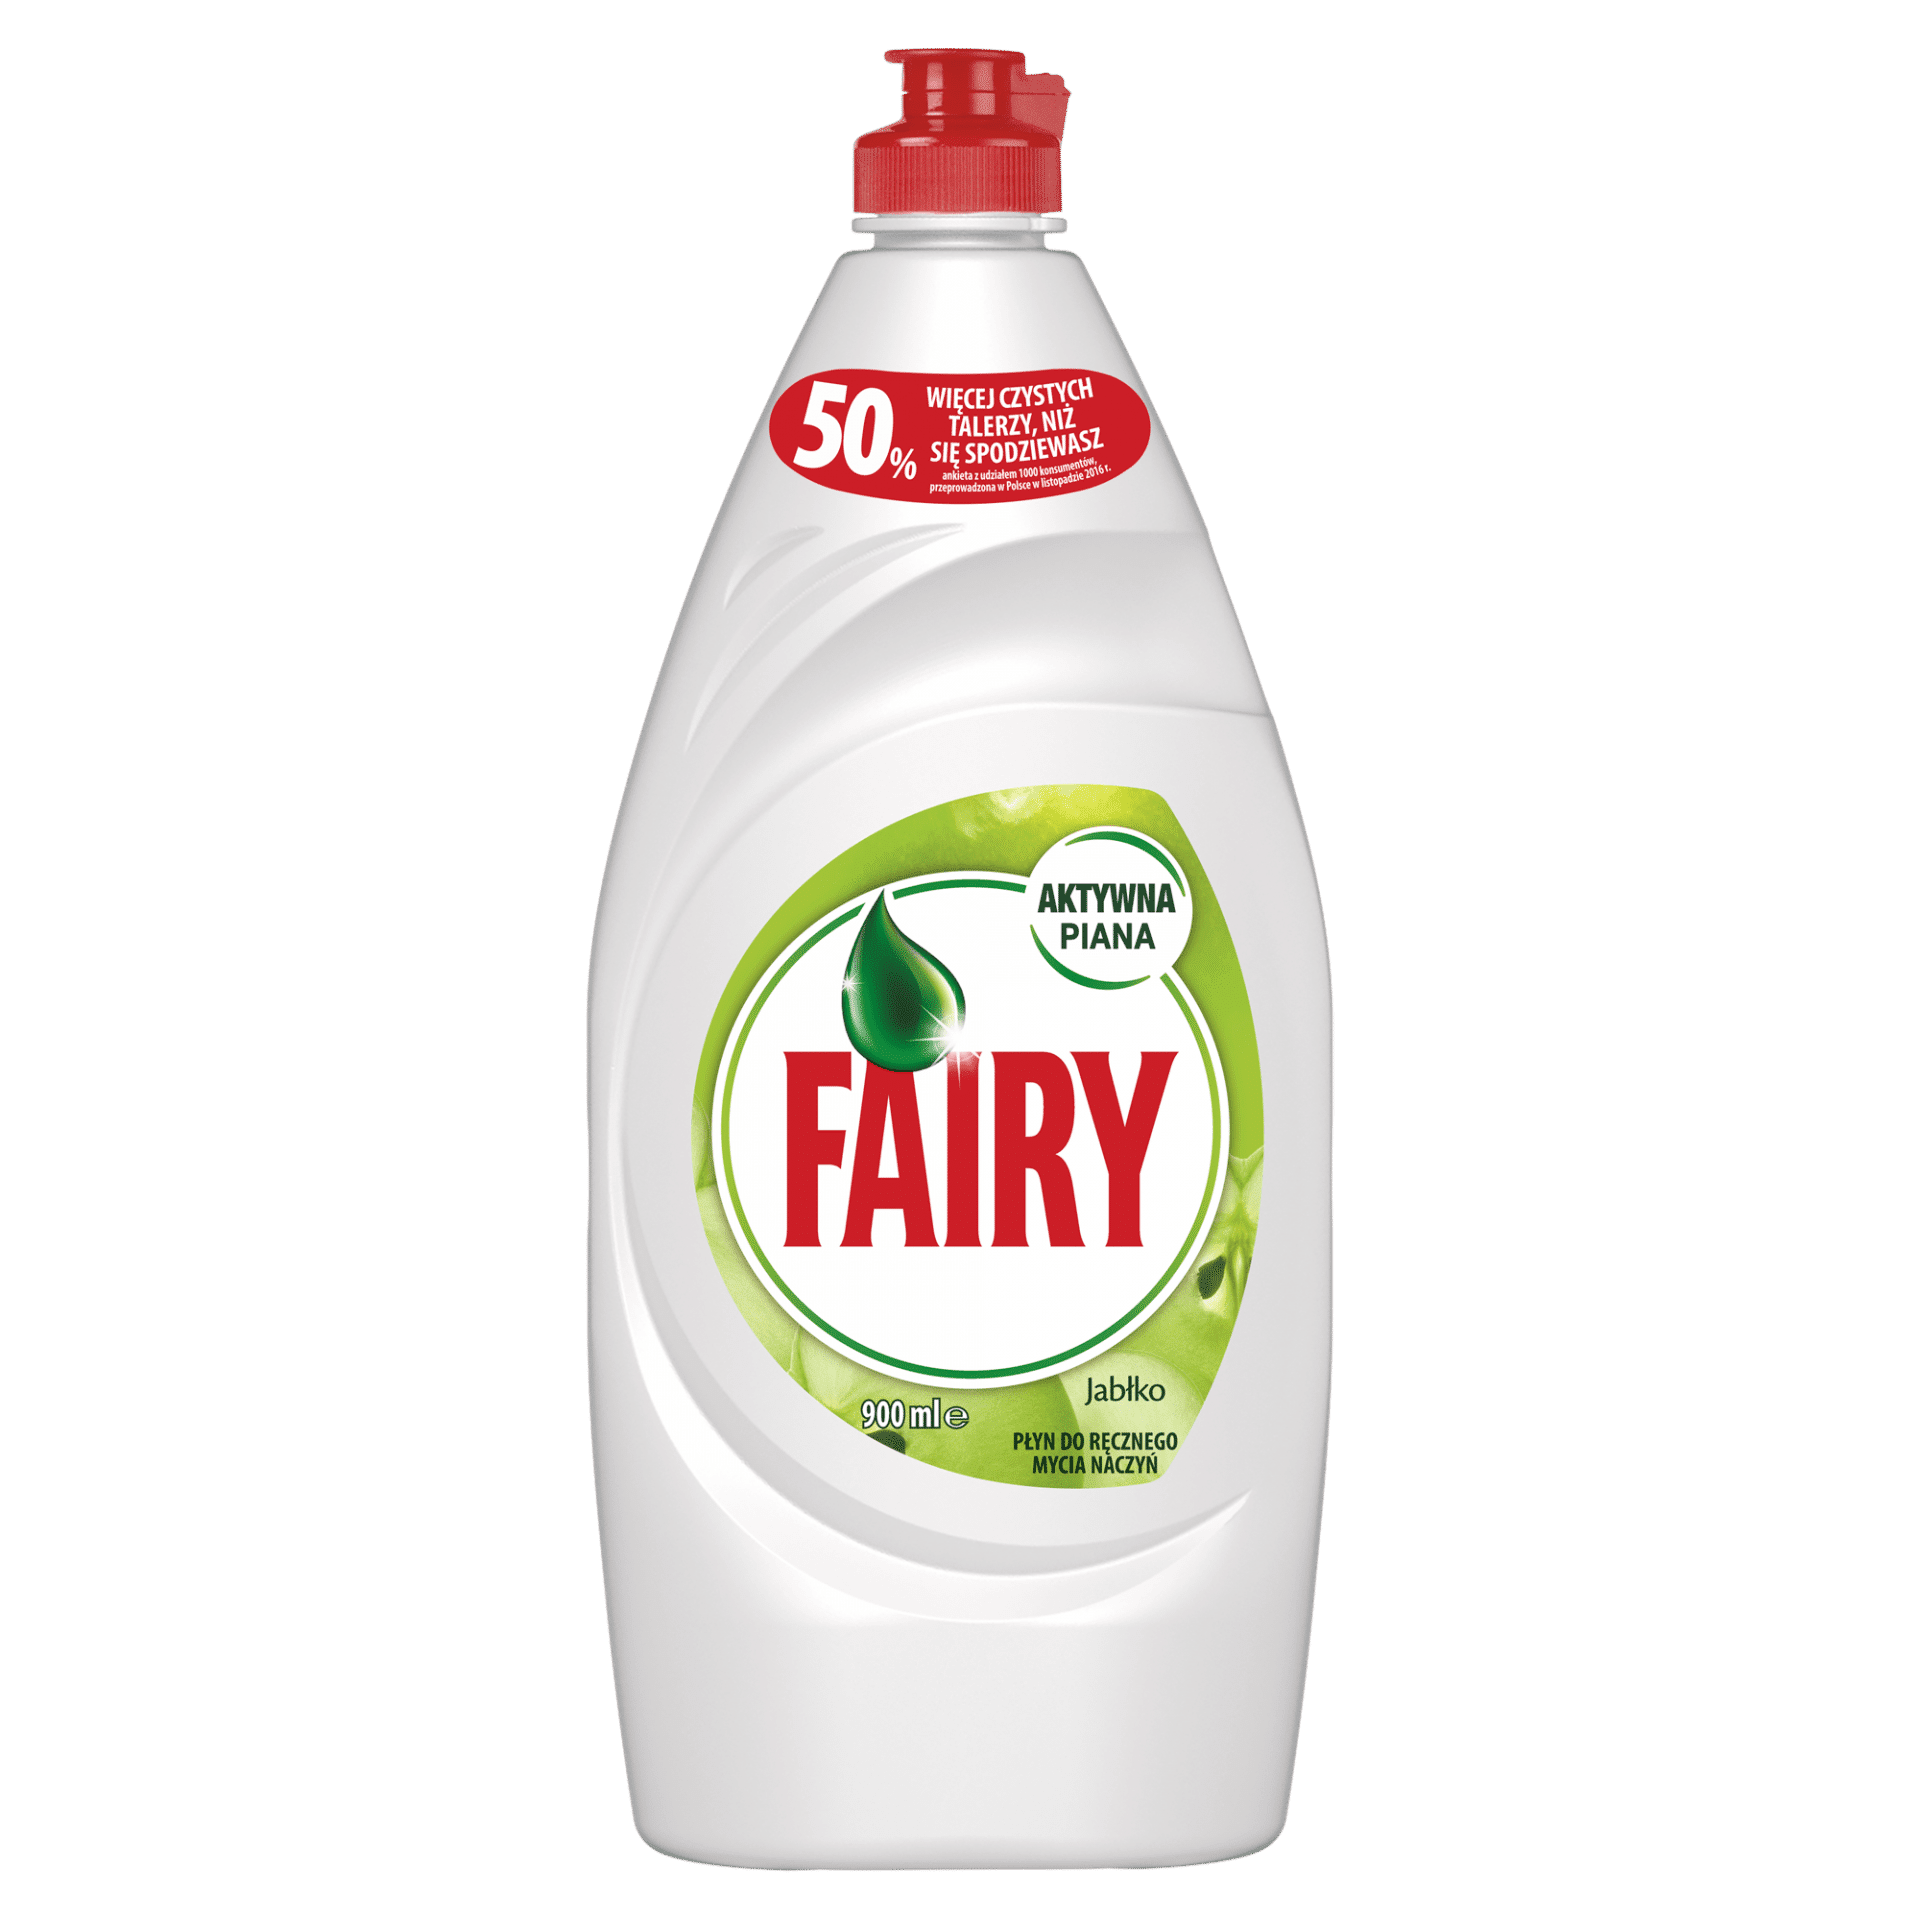 Fairy Clean & Fresh Jabłko Płyn do mycia naczyń 900 ml